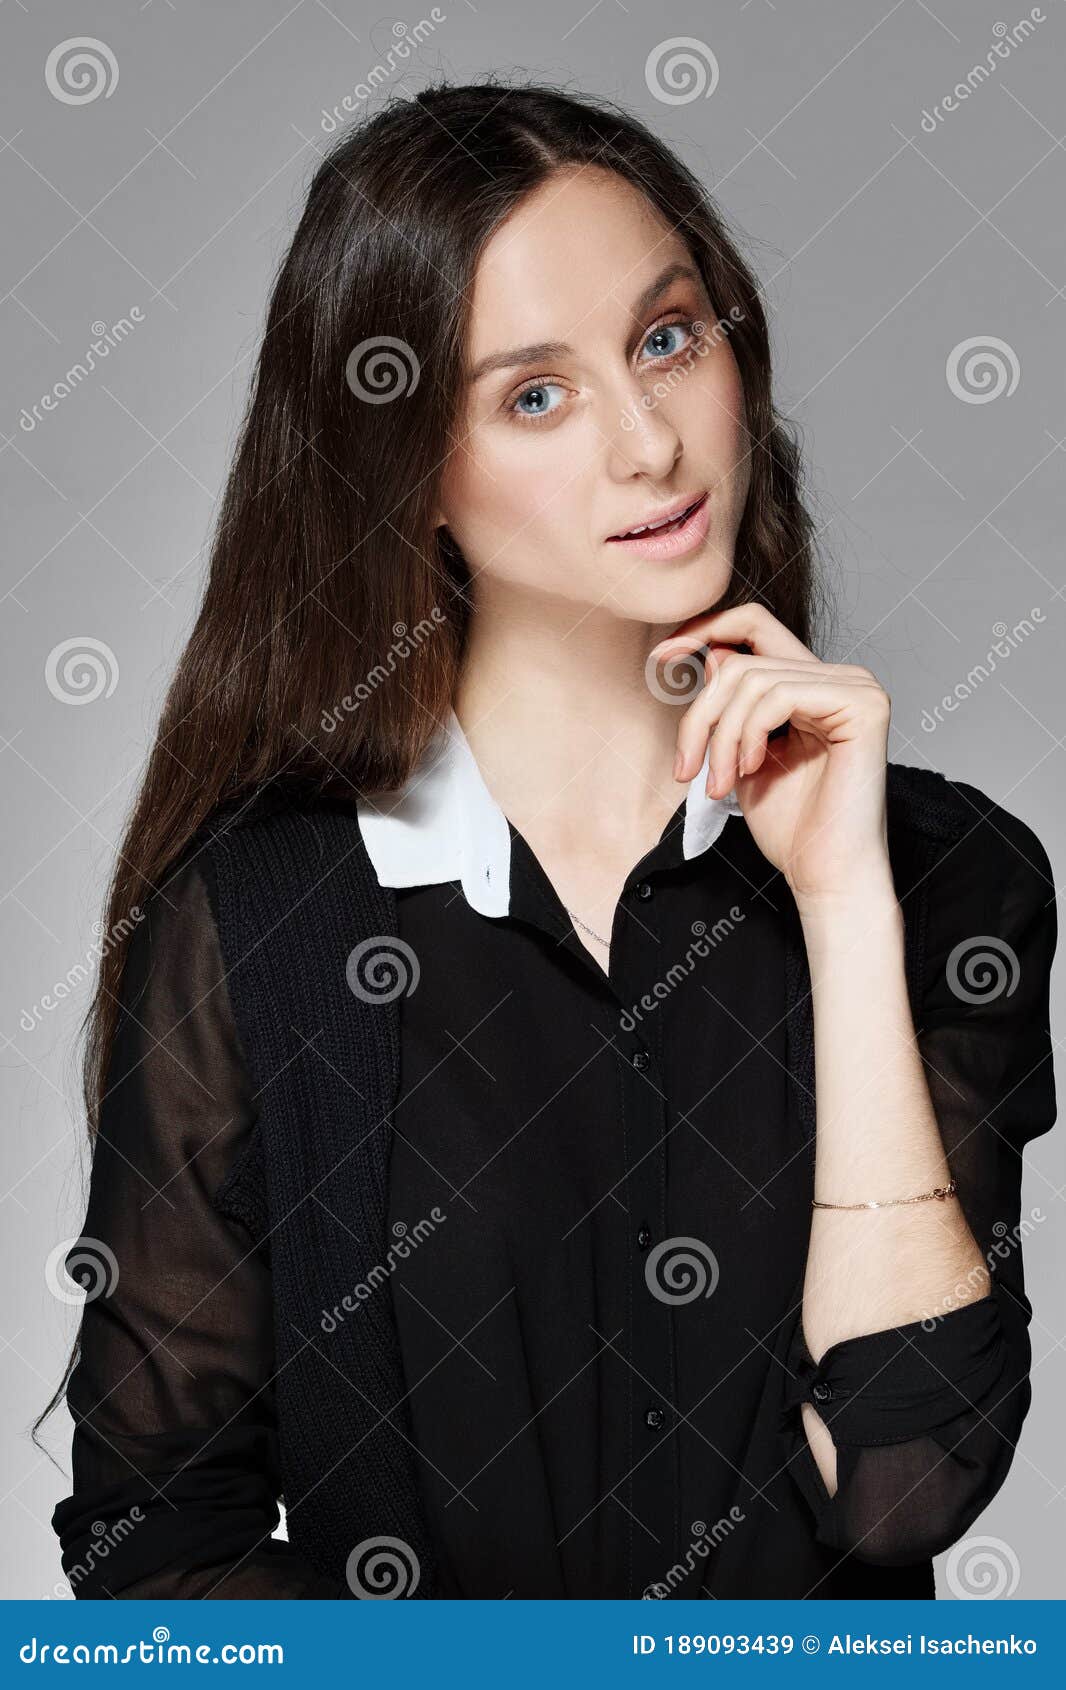 padre calcular Práctico Retrato De Una Niña Con Confección Natural En Blusa Negra Con Cuello Blanco  Imagen de archivo - Imagen de dedo, blusa: 189093439